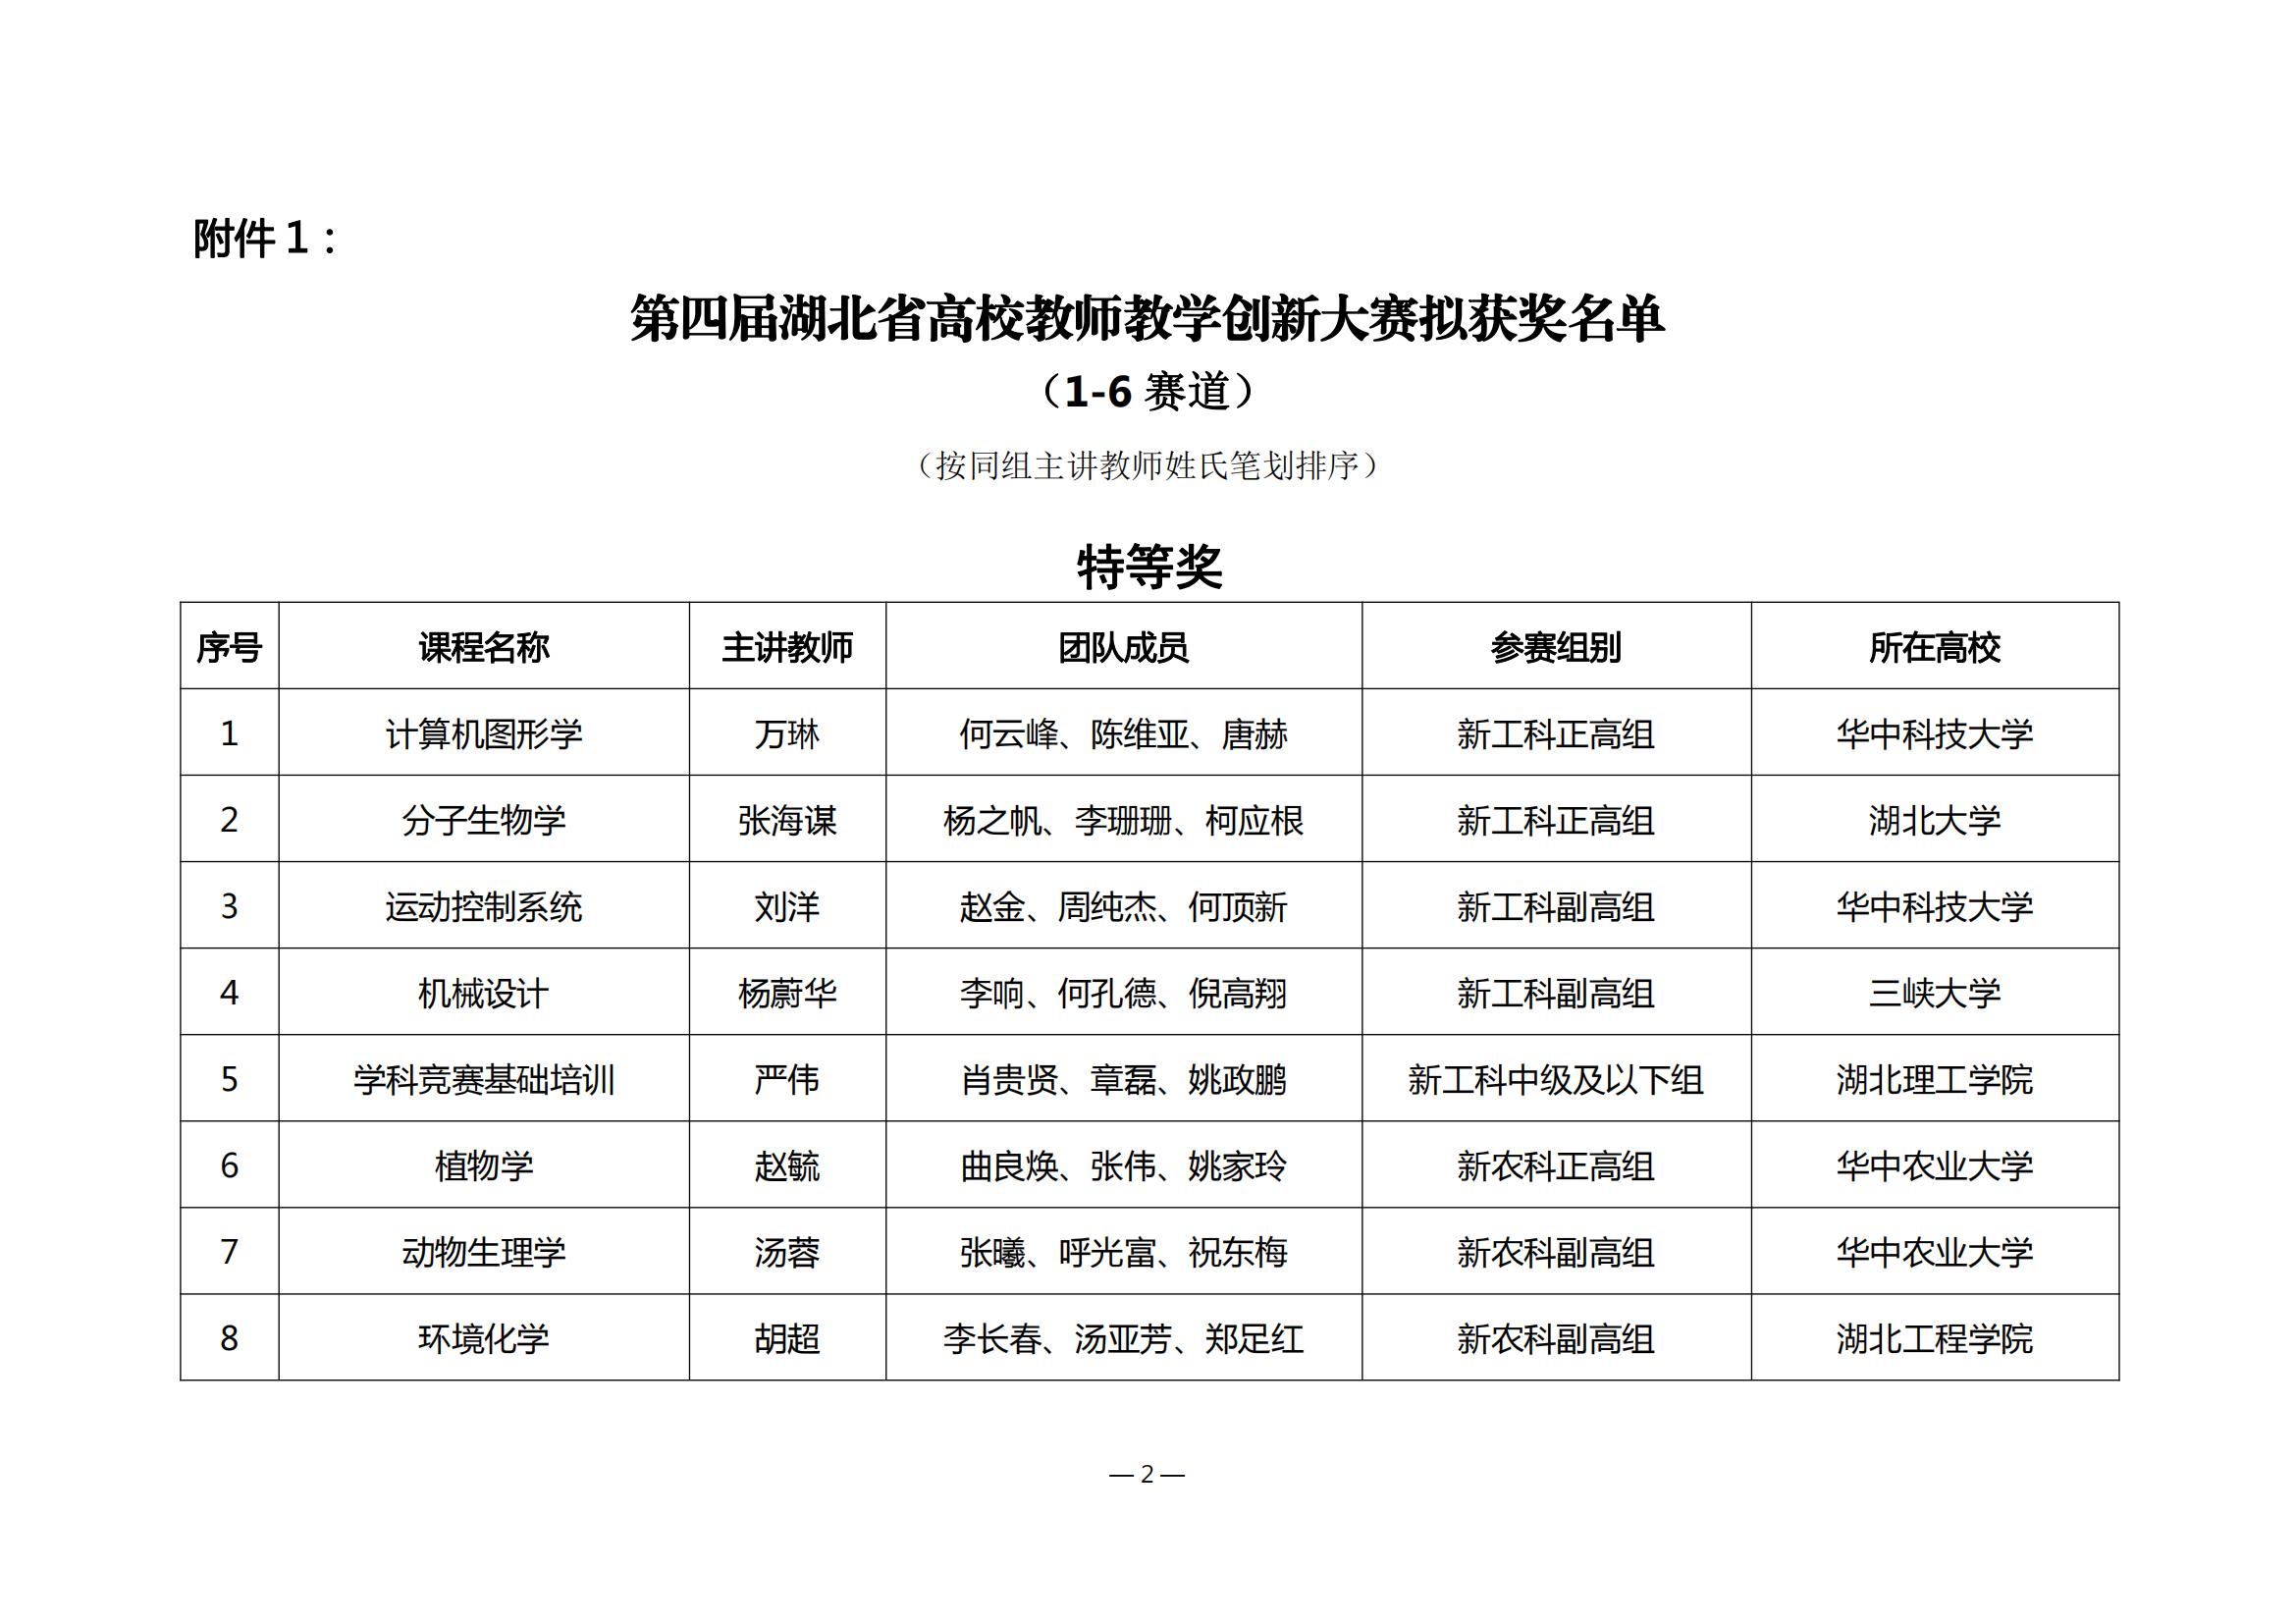 第四届湖北省高校教师教学创新大赛评审结果公示_01.jpg